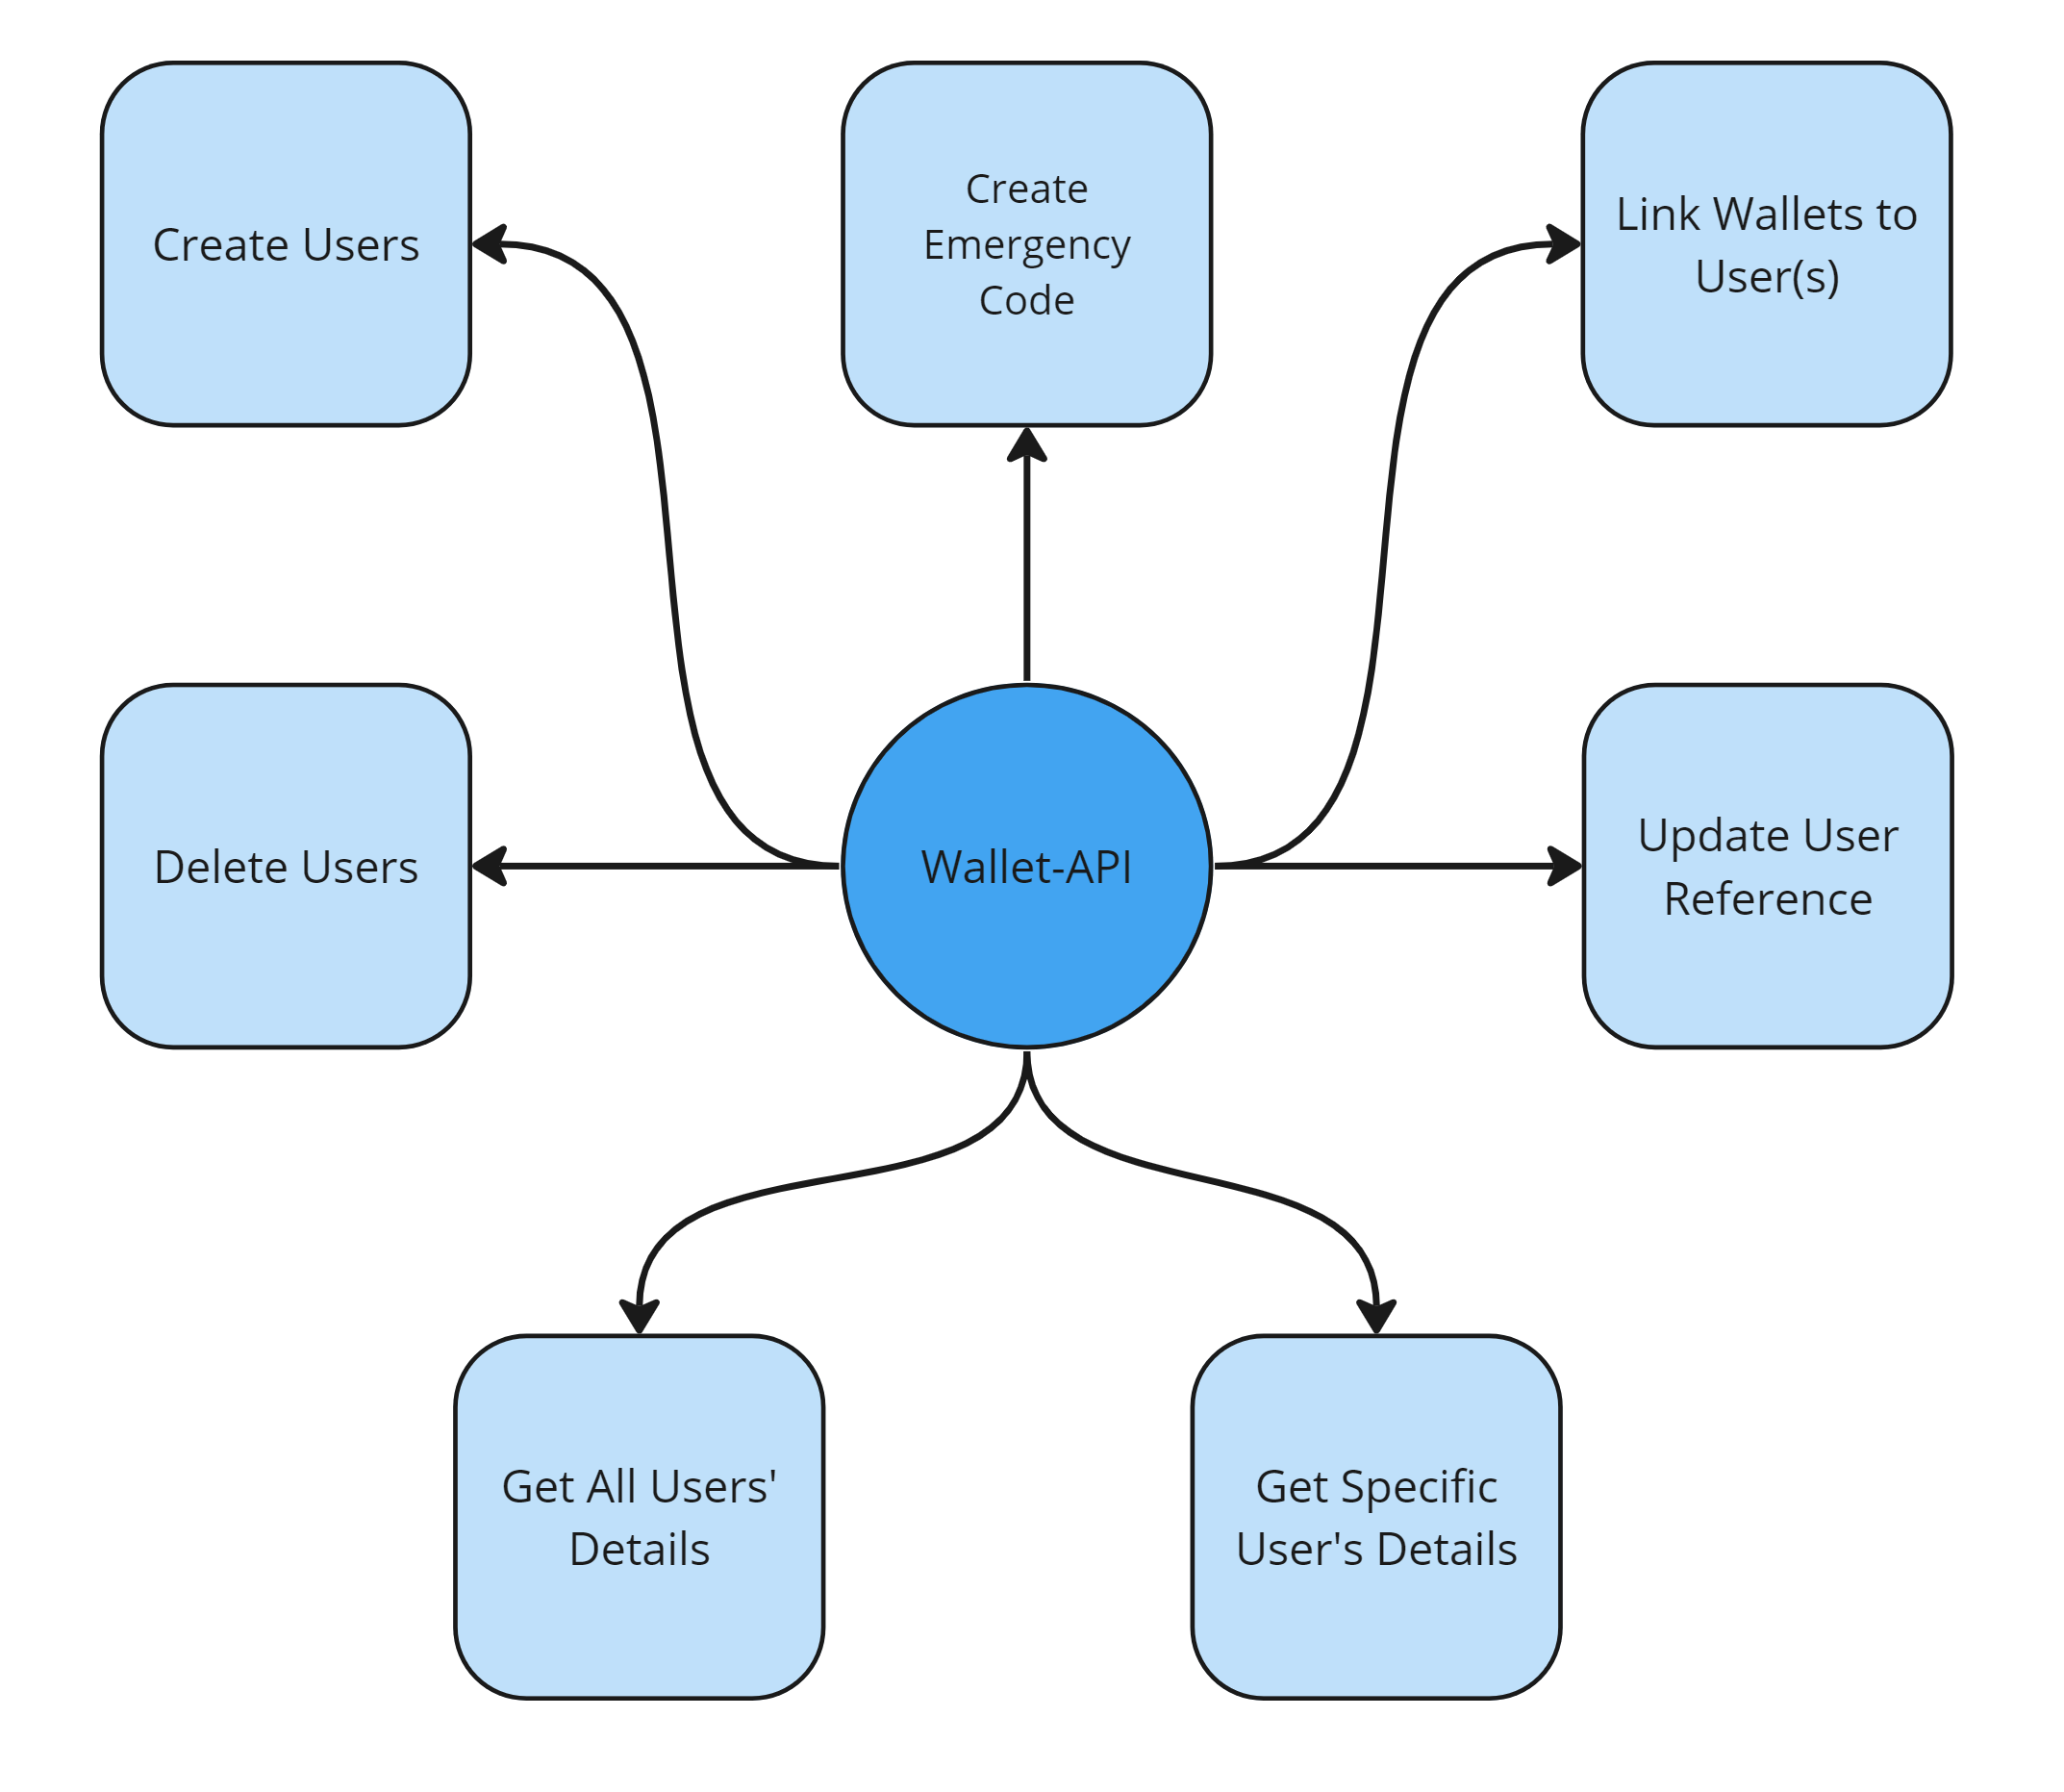 User Management - Wallet-API